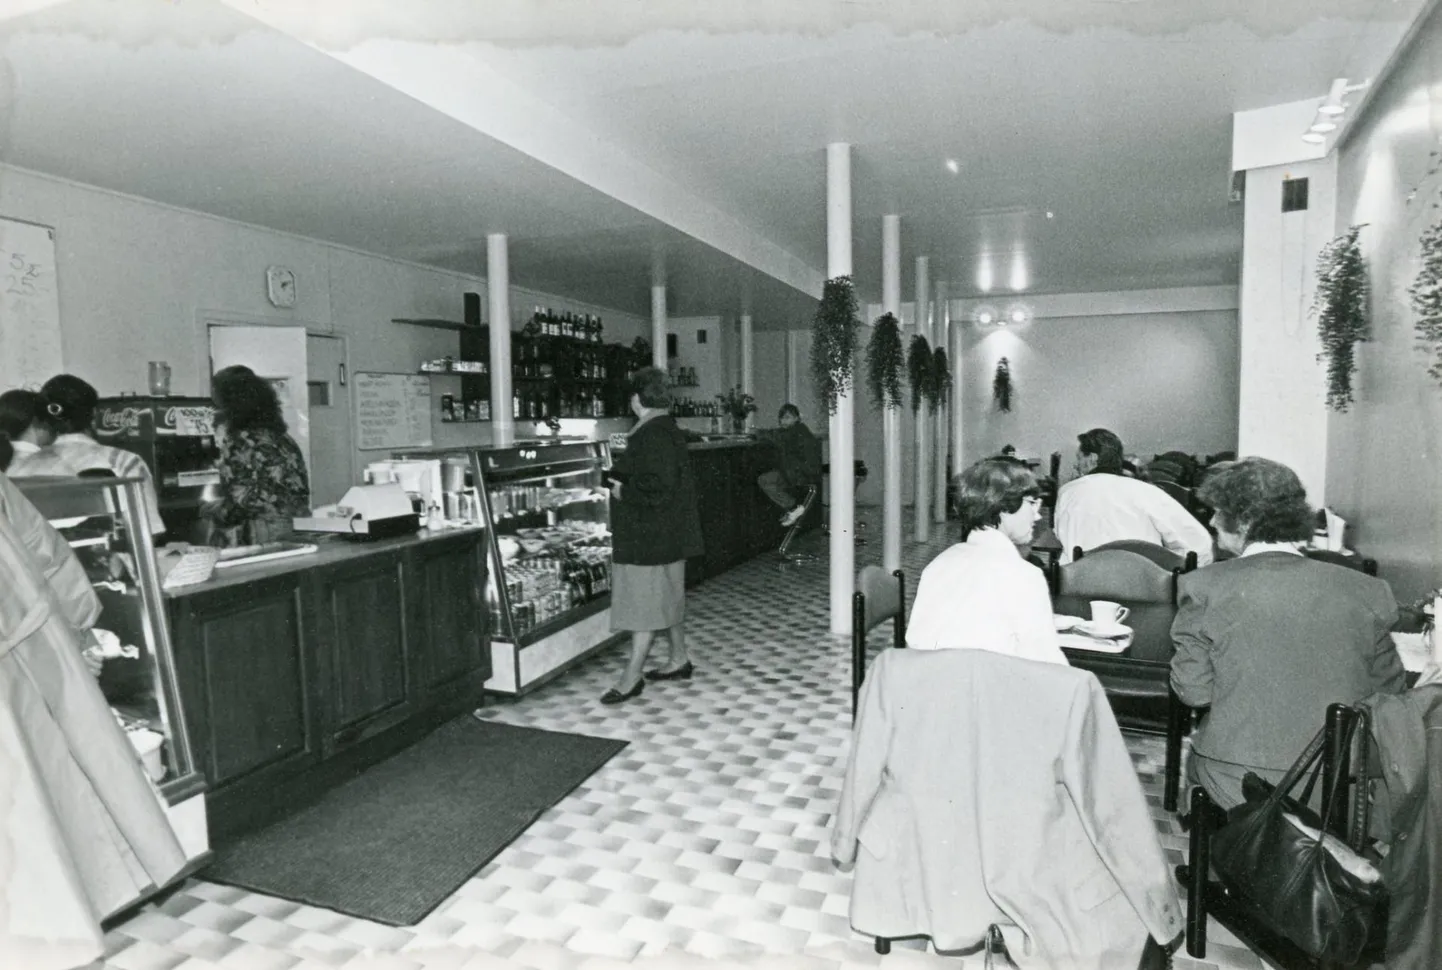 Lisaks sööklatele tegutsesid ka nõukogude ajal kohvikud, kus istuda oli õdusam ja toit kvaliteetsem kui tavalises töölissööklas.